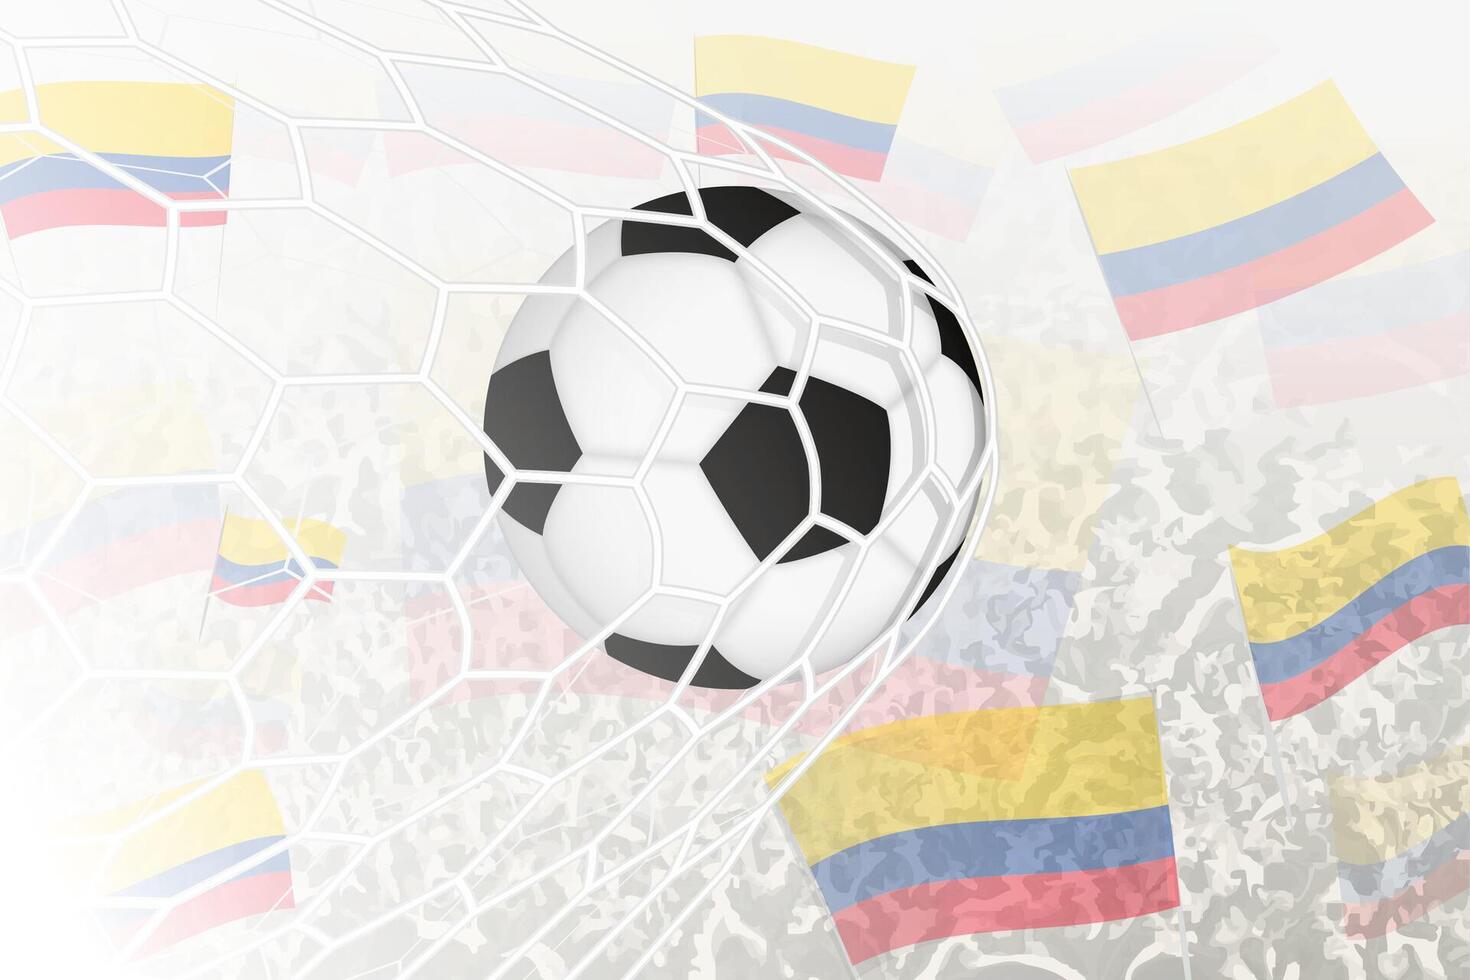 nationaal Amerikaans voetbal team van Colombia scoorde doel. bal in doel netto, terwijl Amerikaans voetbal supporters zijn golvend de Colombia vlag in de achtergrond. vector